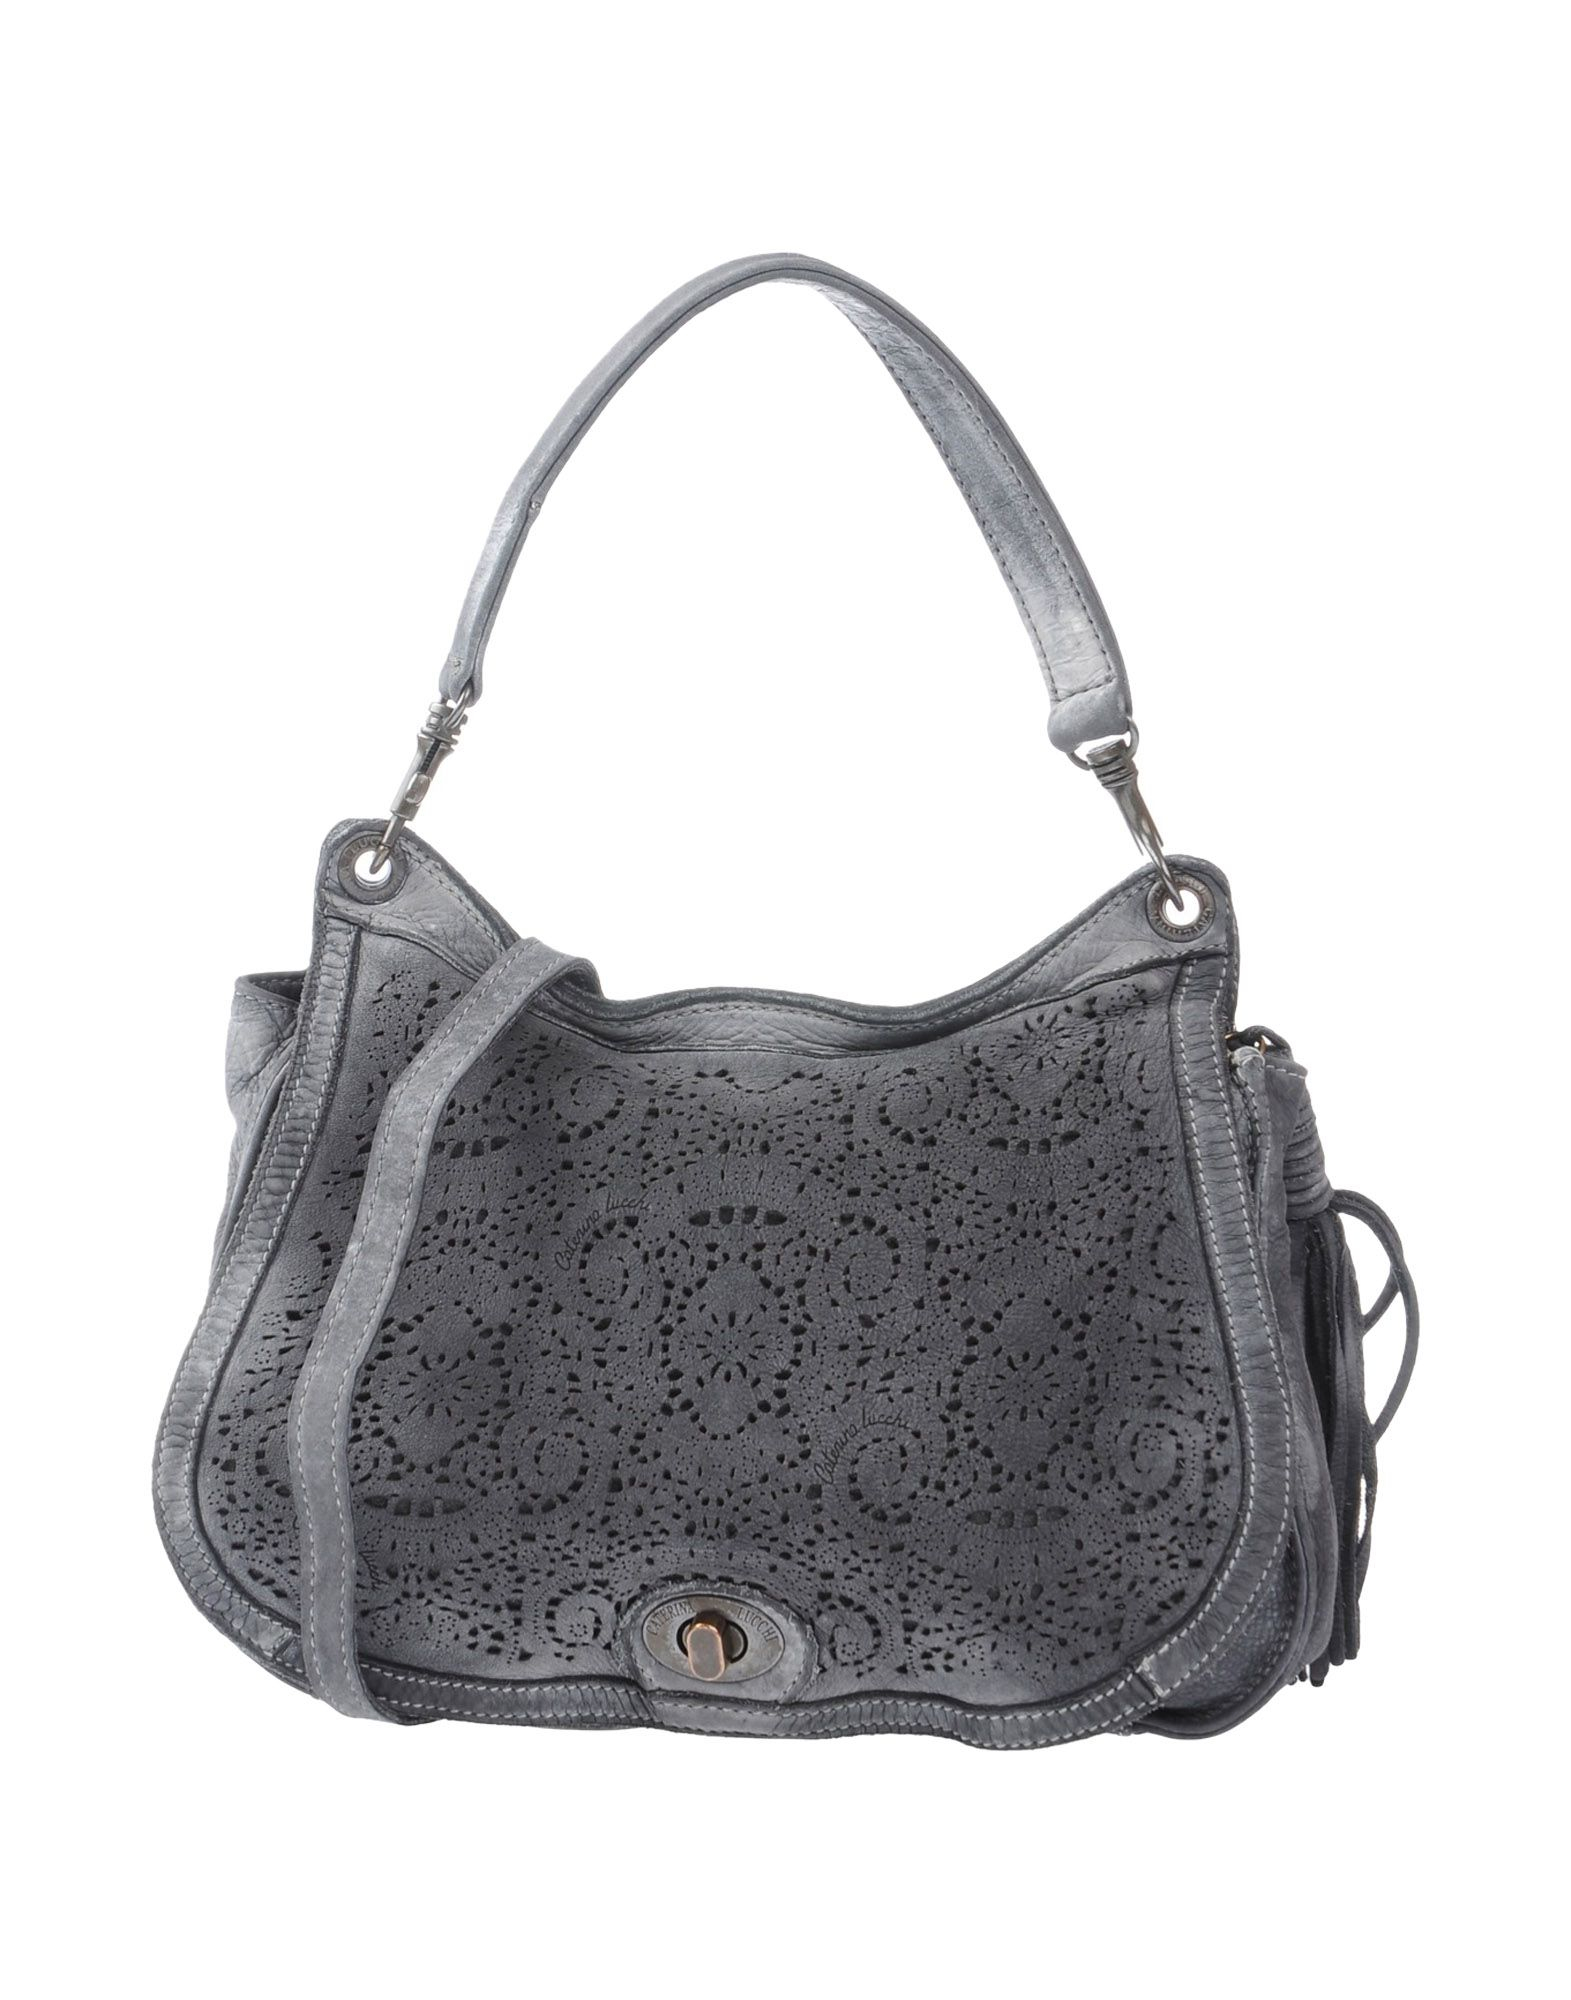 Lyst - Caterina Lucchi Handbag in Gray